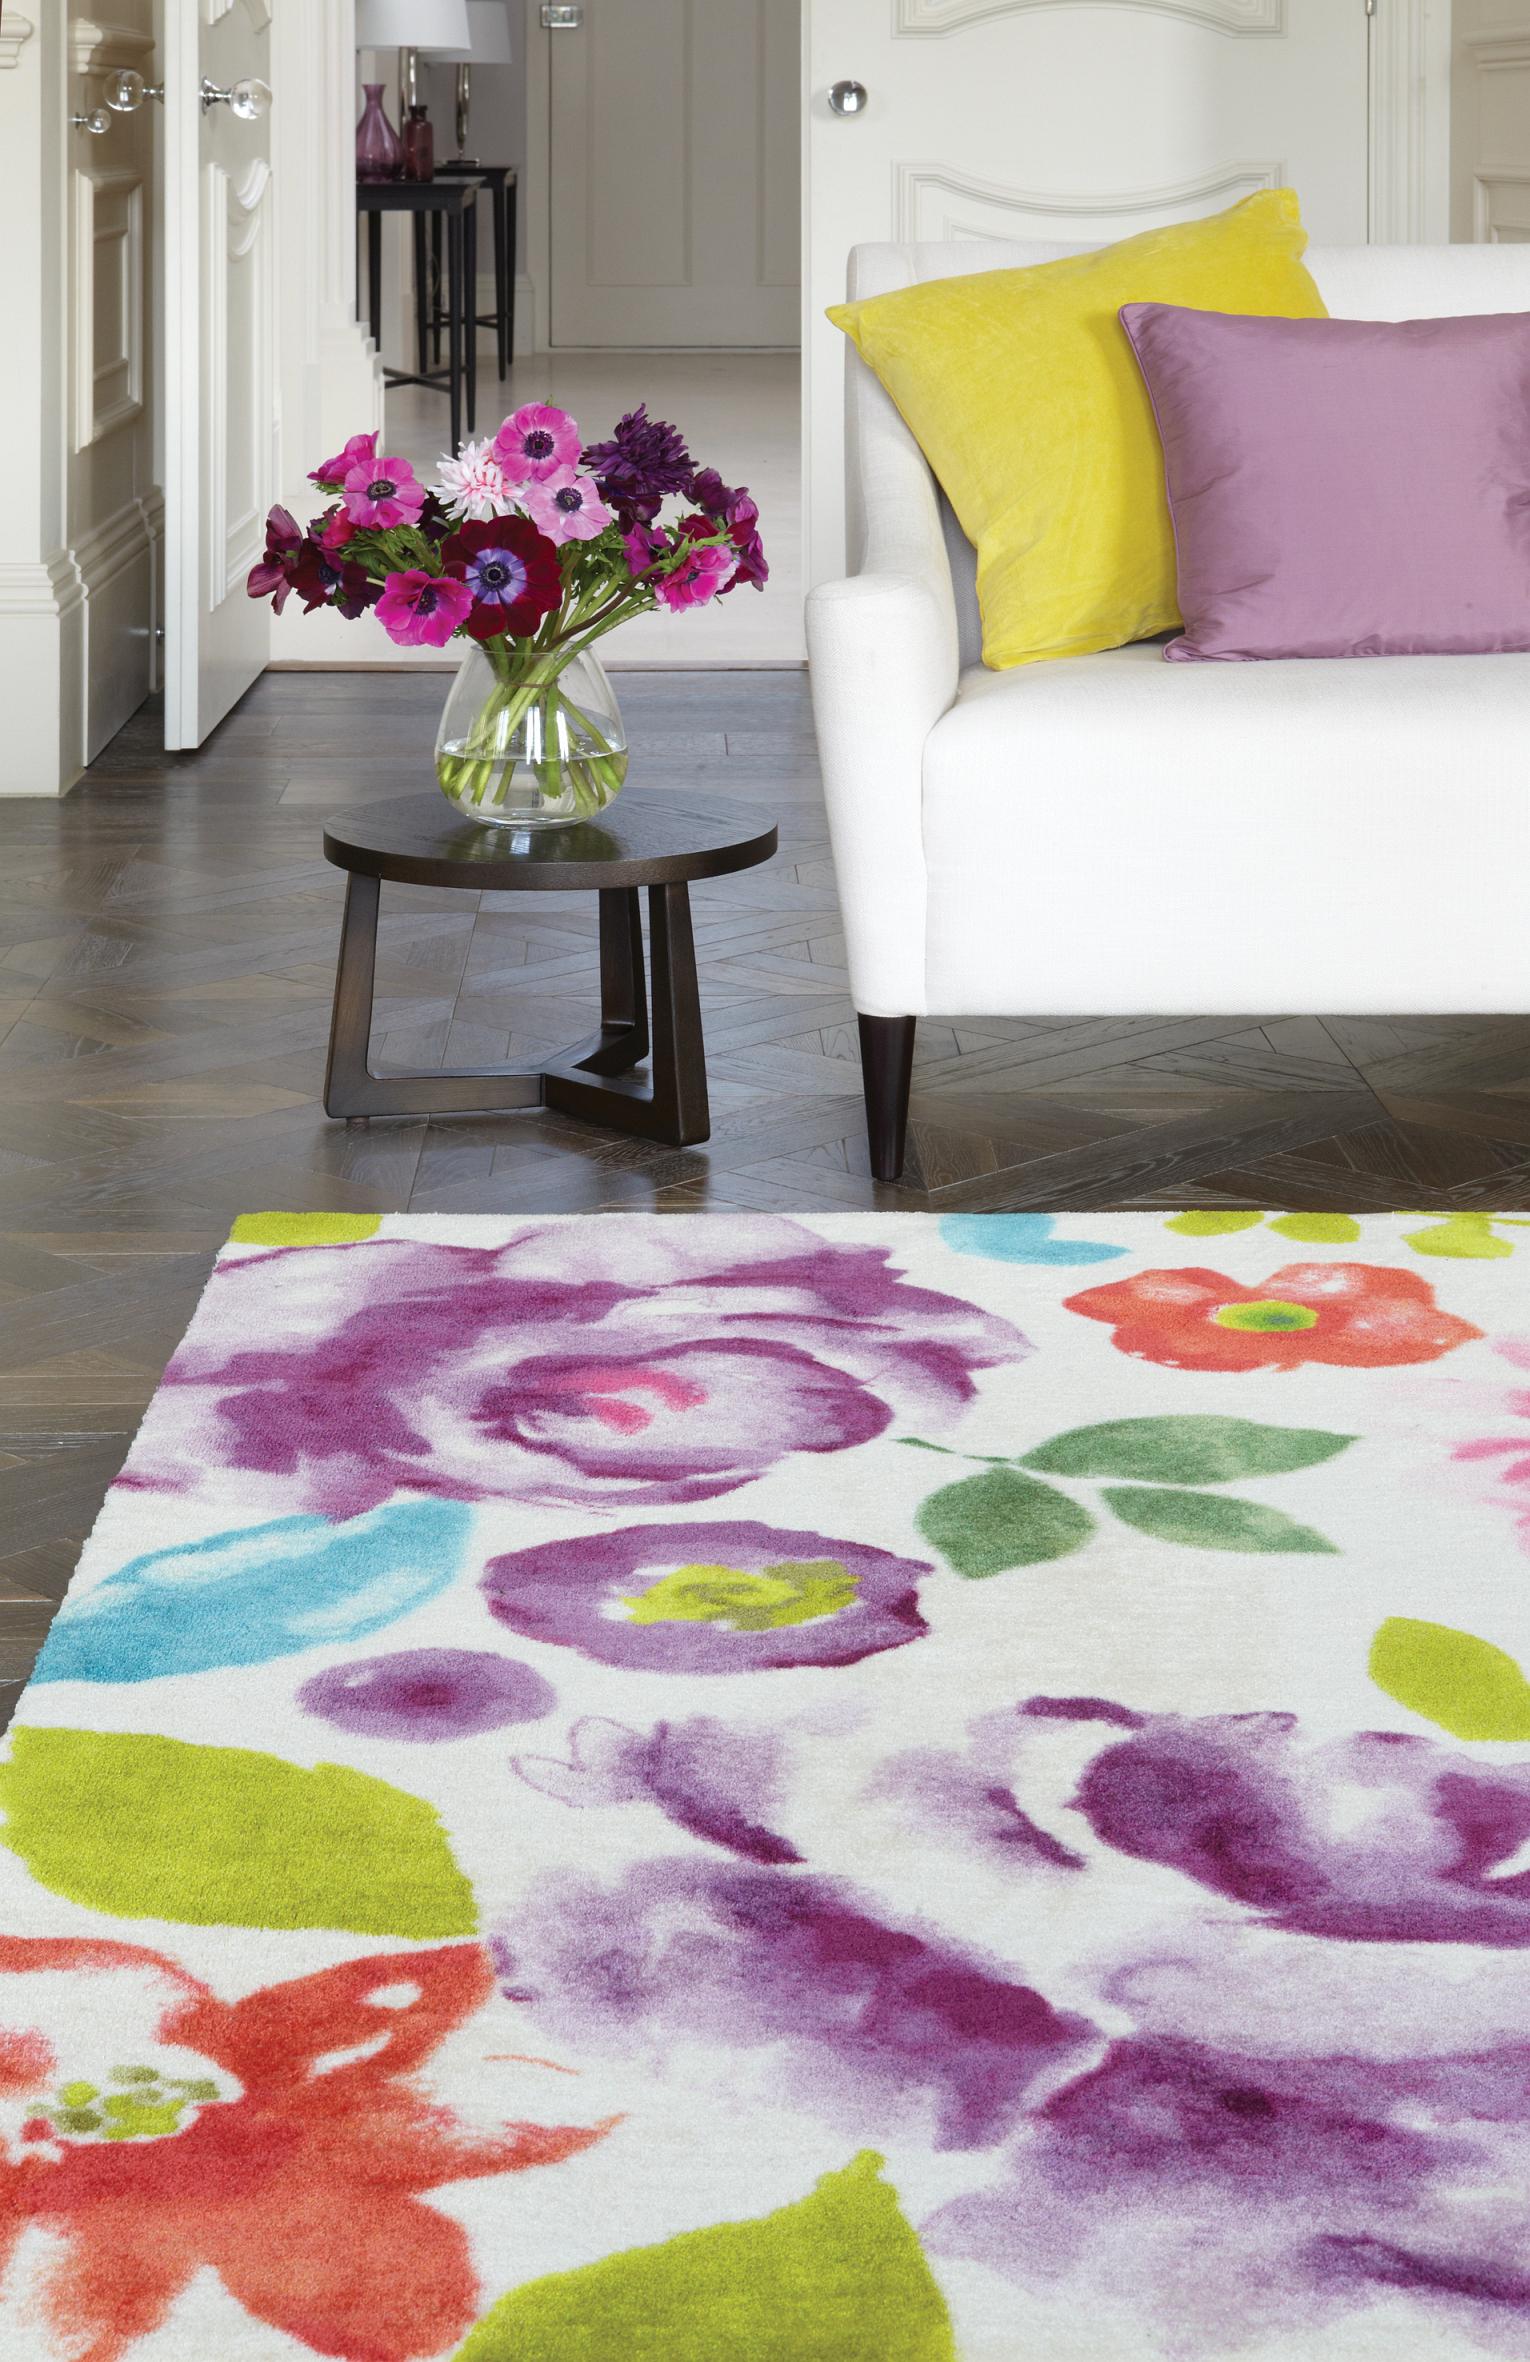 Blumiger Teppich im frischen Ambiente #wohnzimmerteppich ©KadimaDesign